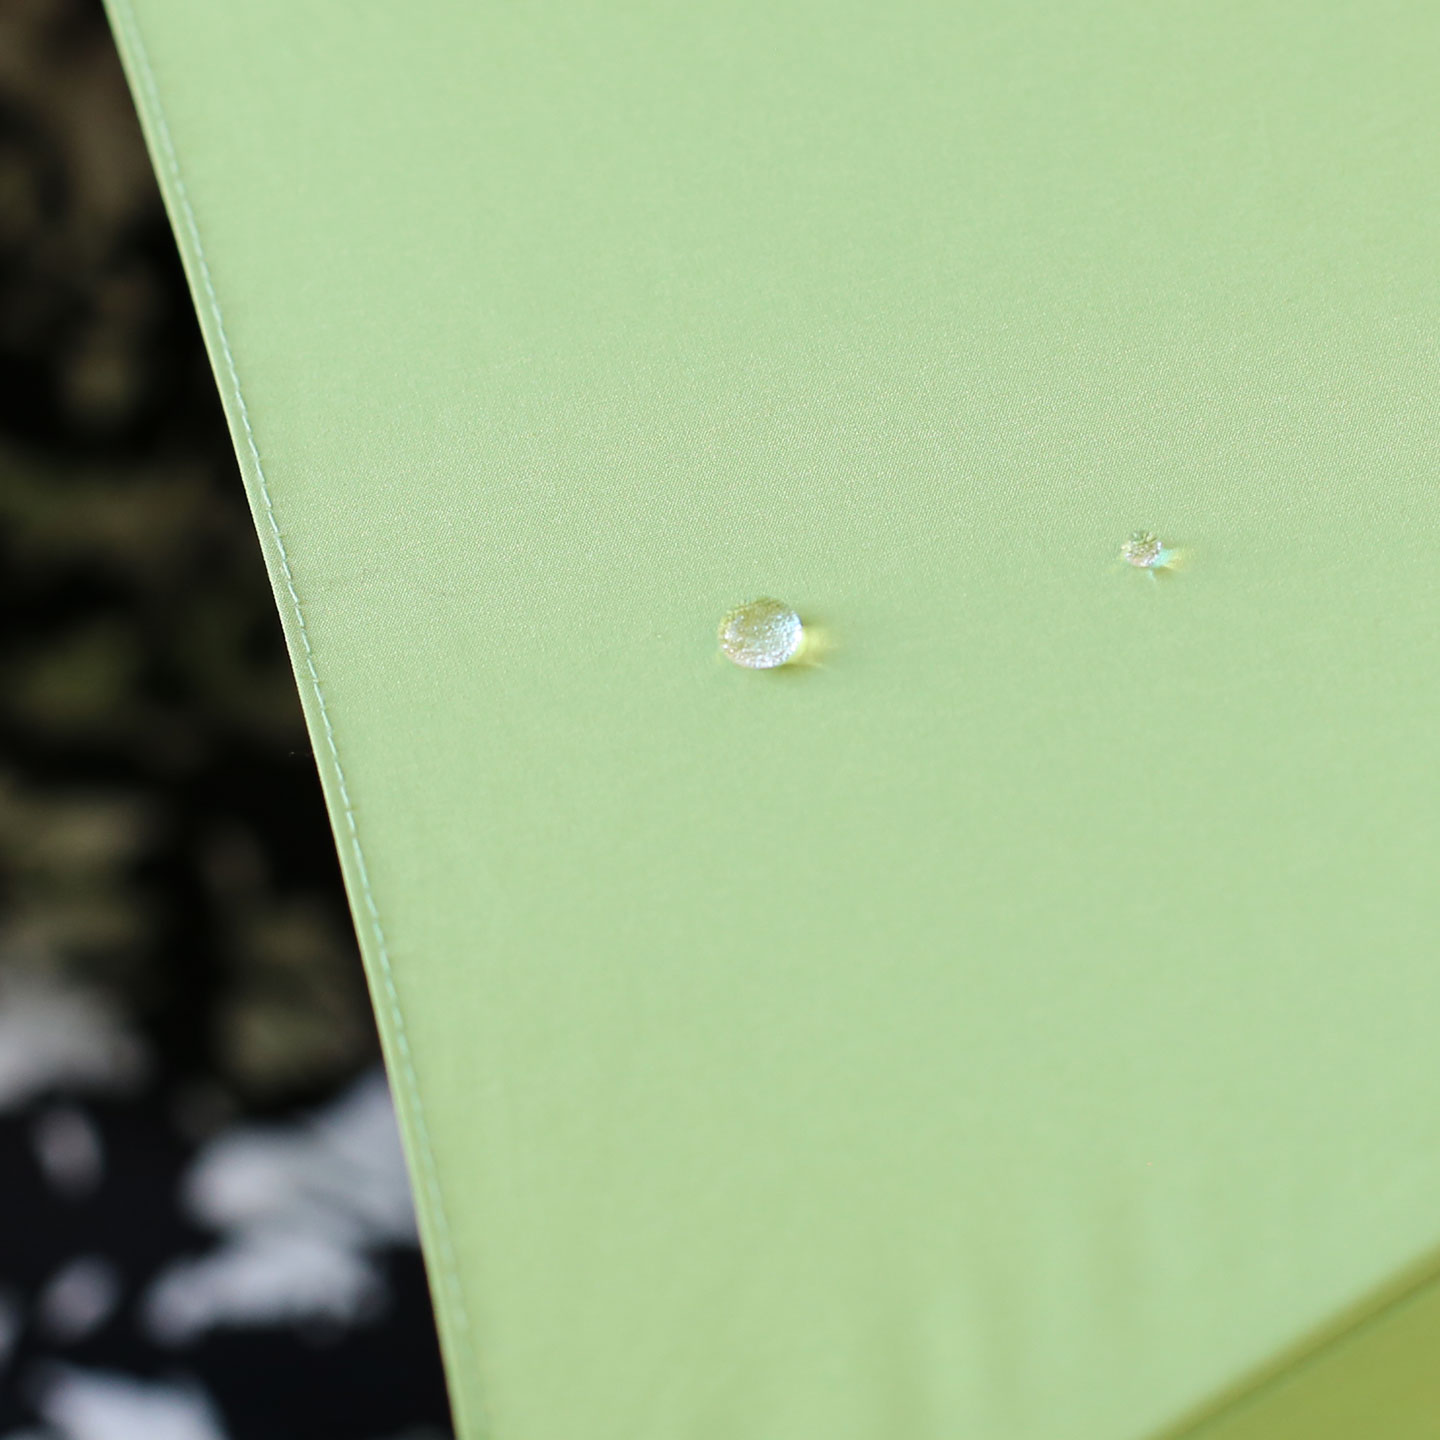 しずくを弾く蓮の葉の原理を応用して布の表面を撥水加工した傘。